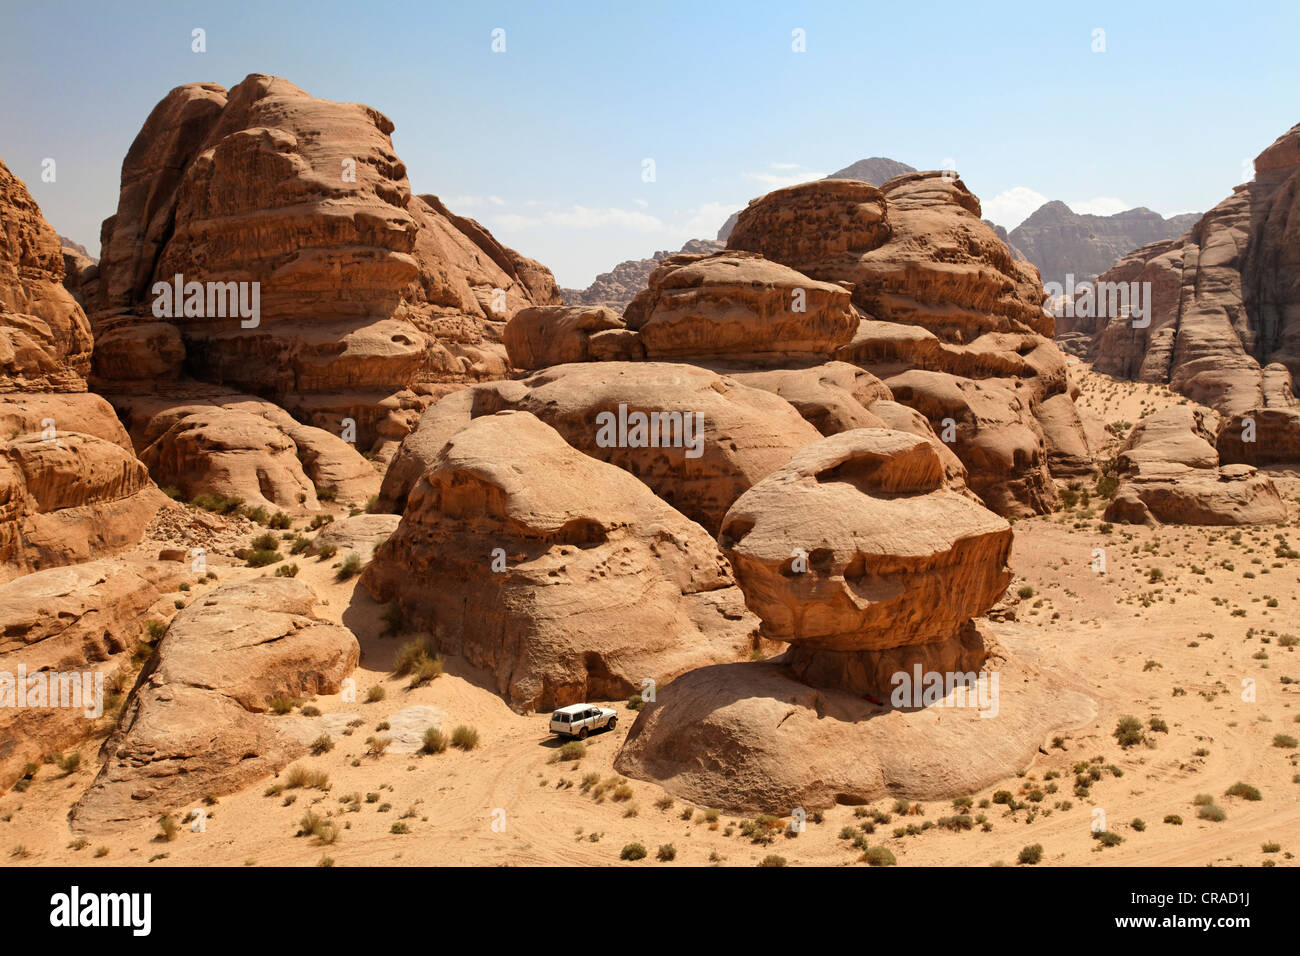 Véhicule hors route au volant entre les rochers dans le désert, Wadi Rum, Royaume hachémite de Jordanie, Moyen-Orient, Asie Banque D'Images